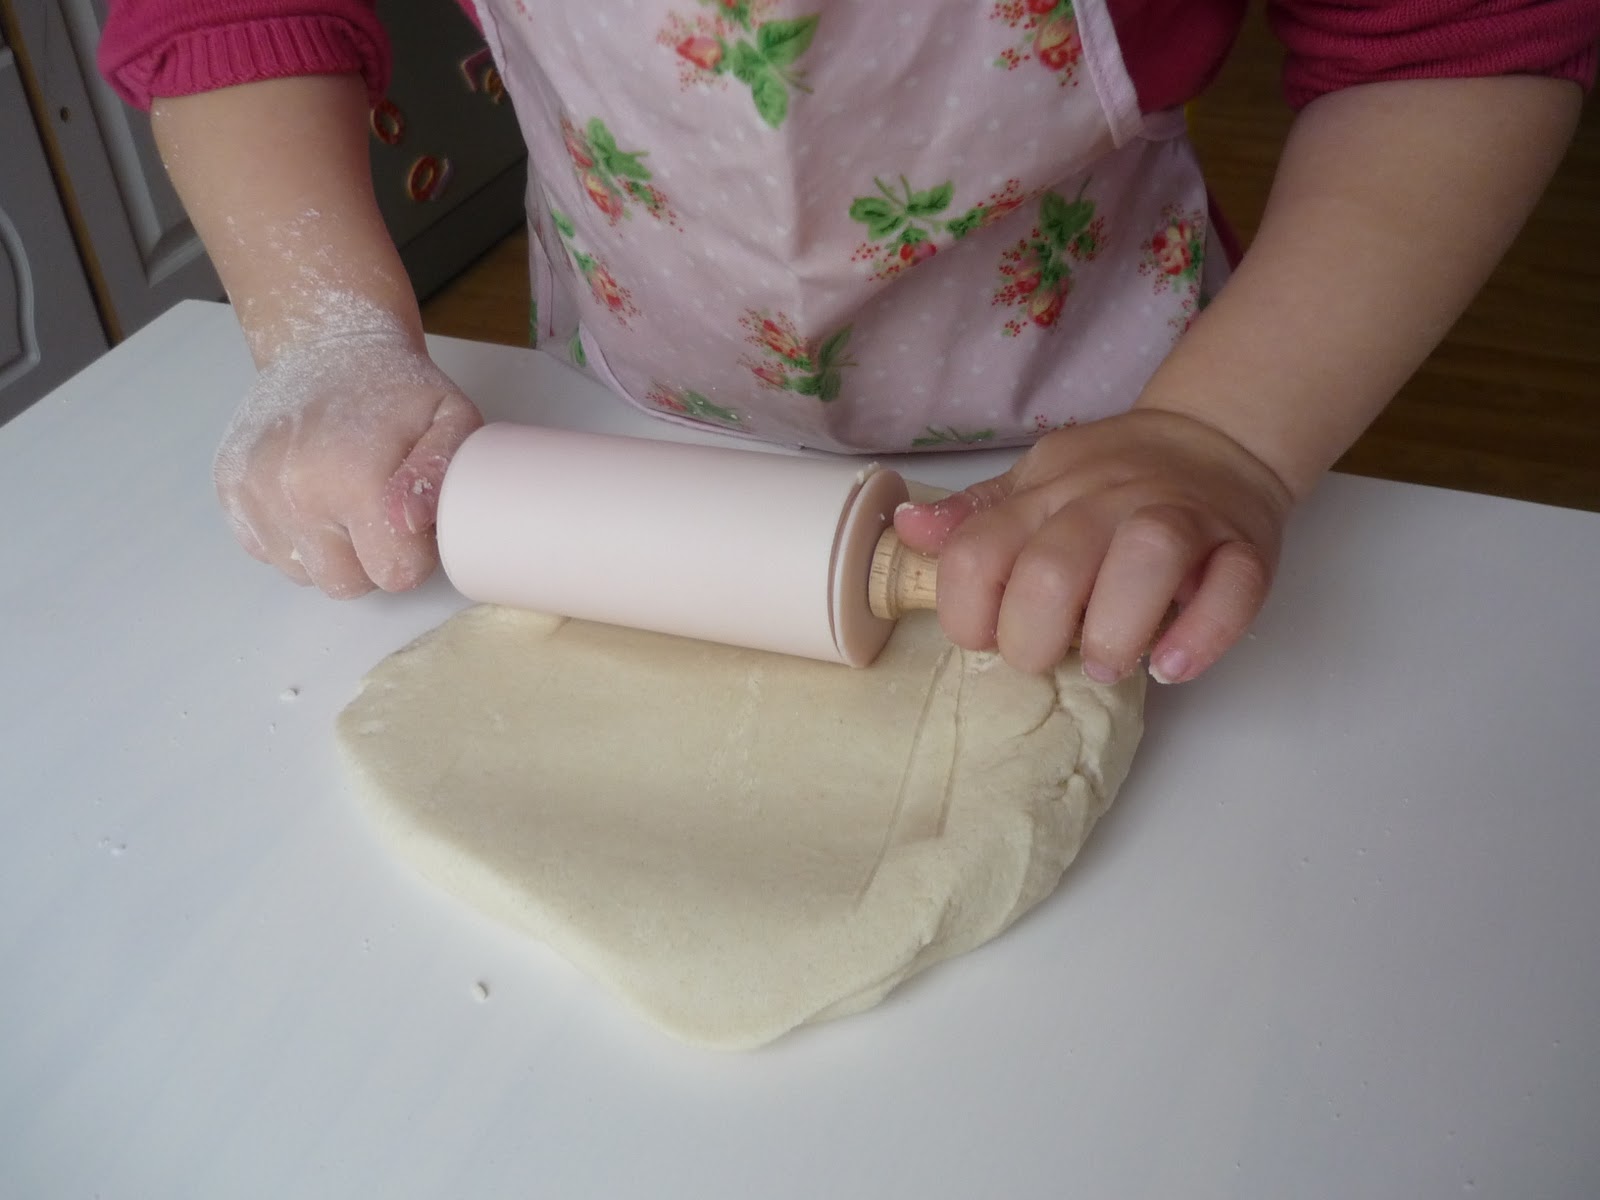 Тесто своими руками для детей: Тесто для лепки своими руками рецепт для детей